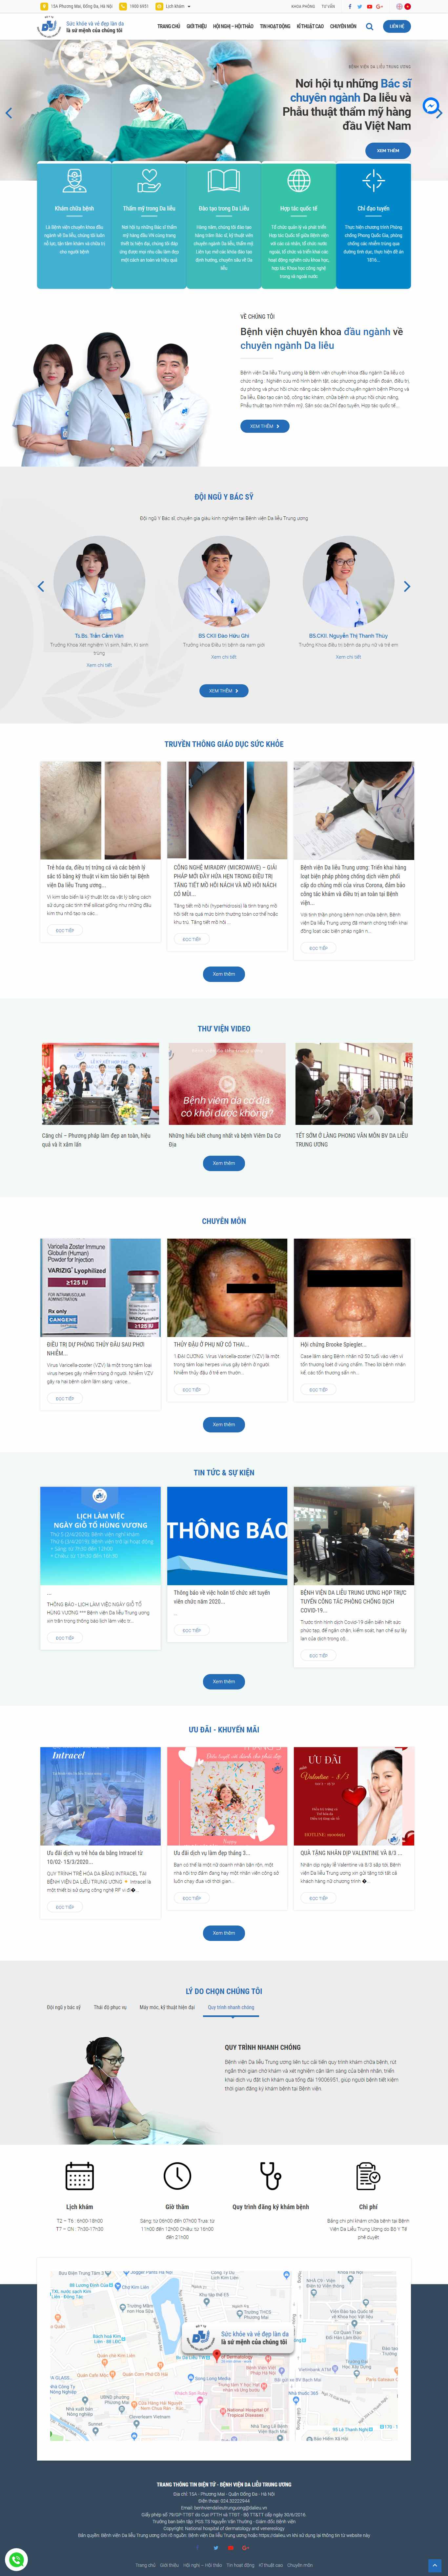 Thiết kế Website bệnh viện - dalieu.vn